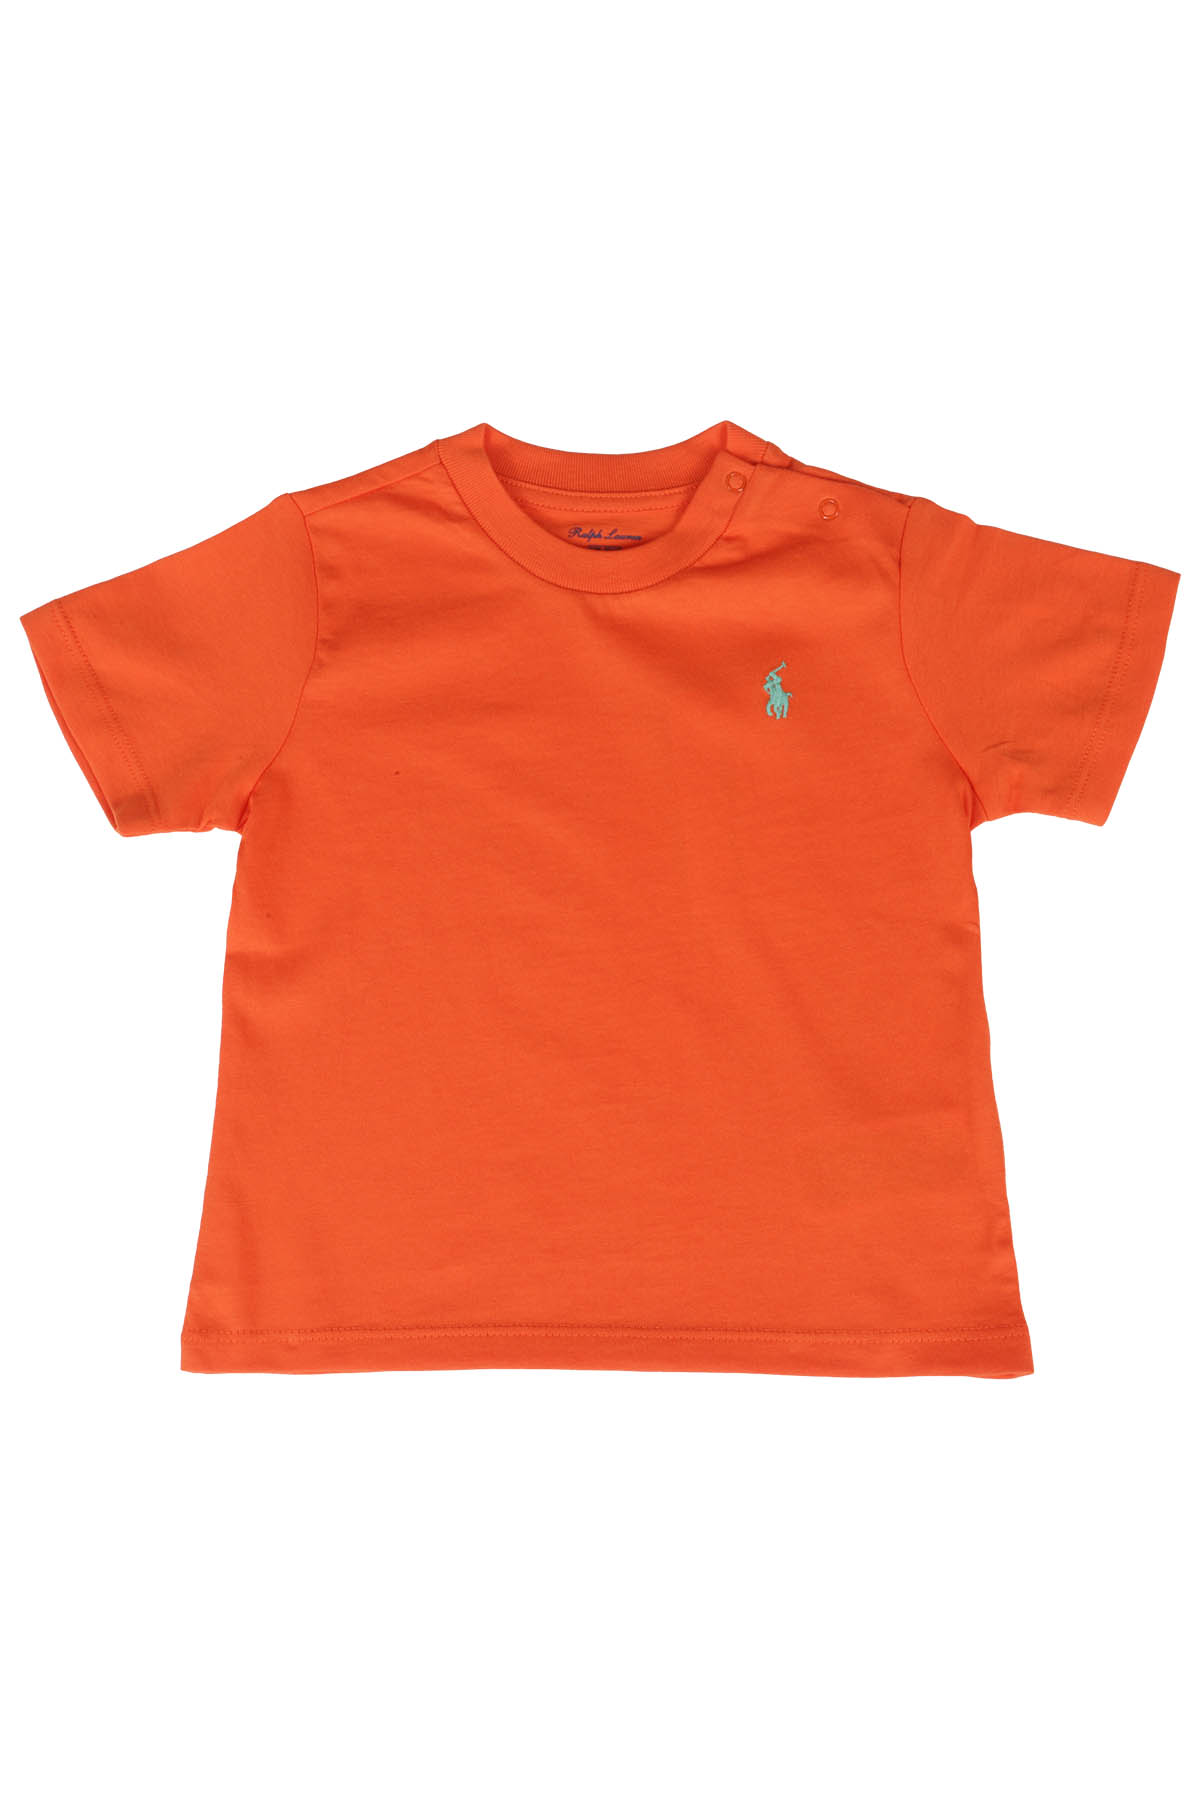 Polo Ralph Lauren Babies' Tshirt In Orange